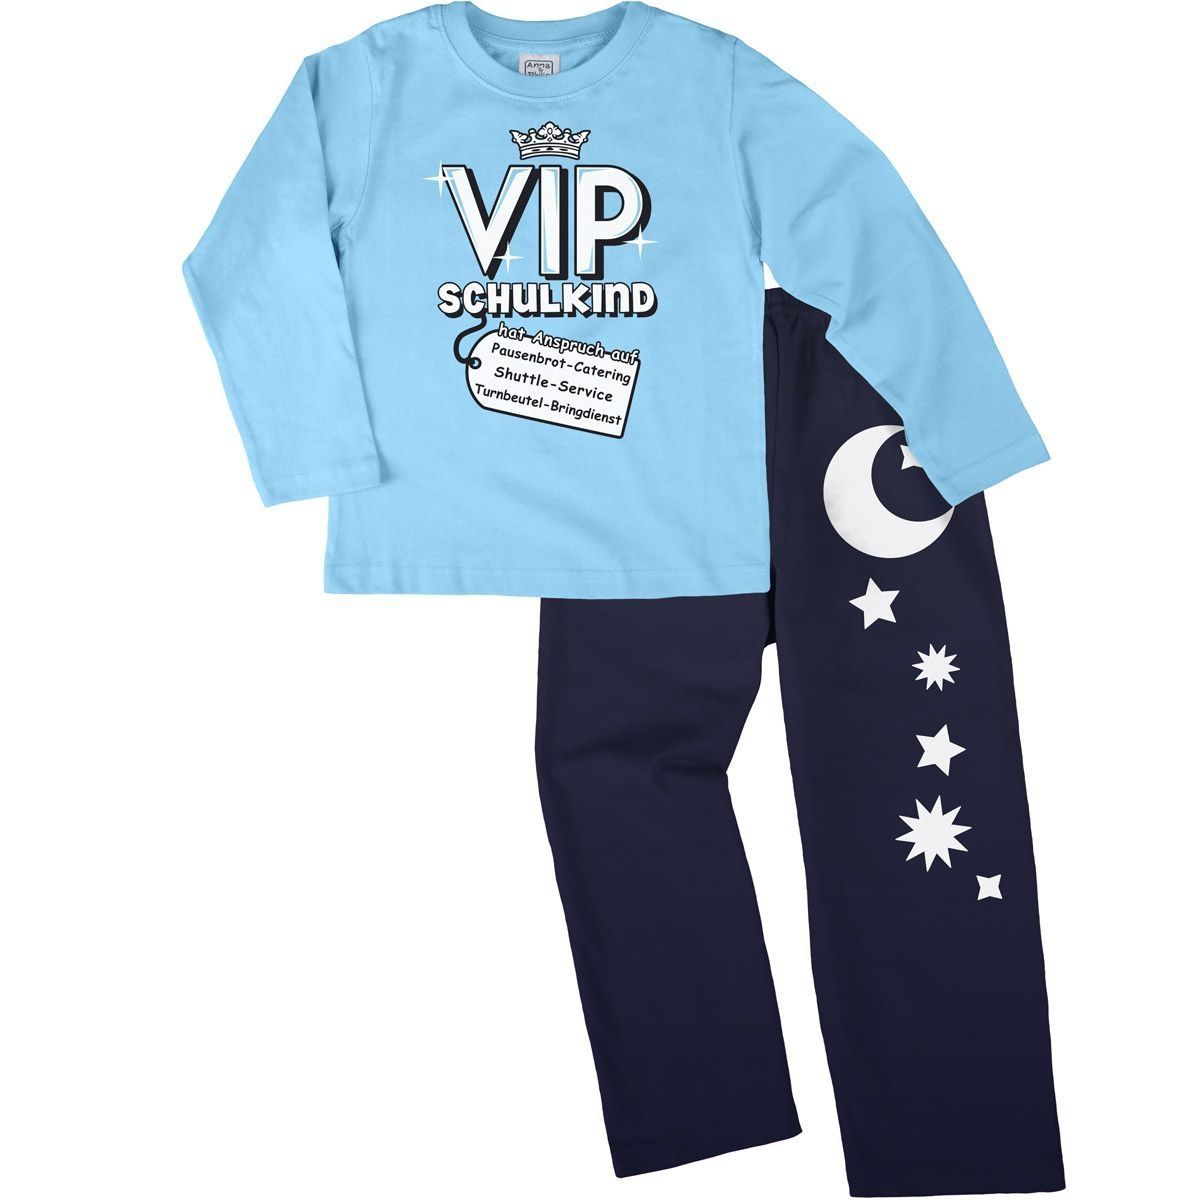 VIP Schulkind Pyjama Set hellblau / navy 122 / 128